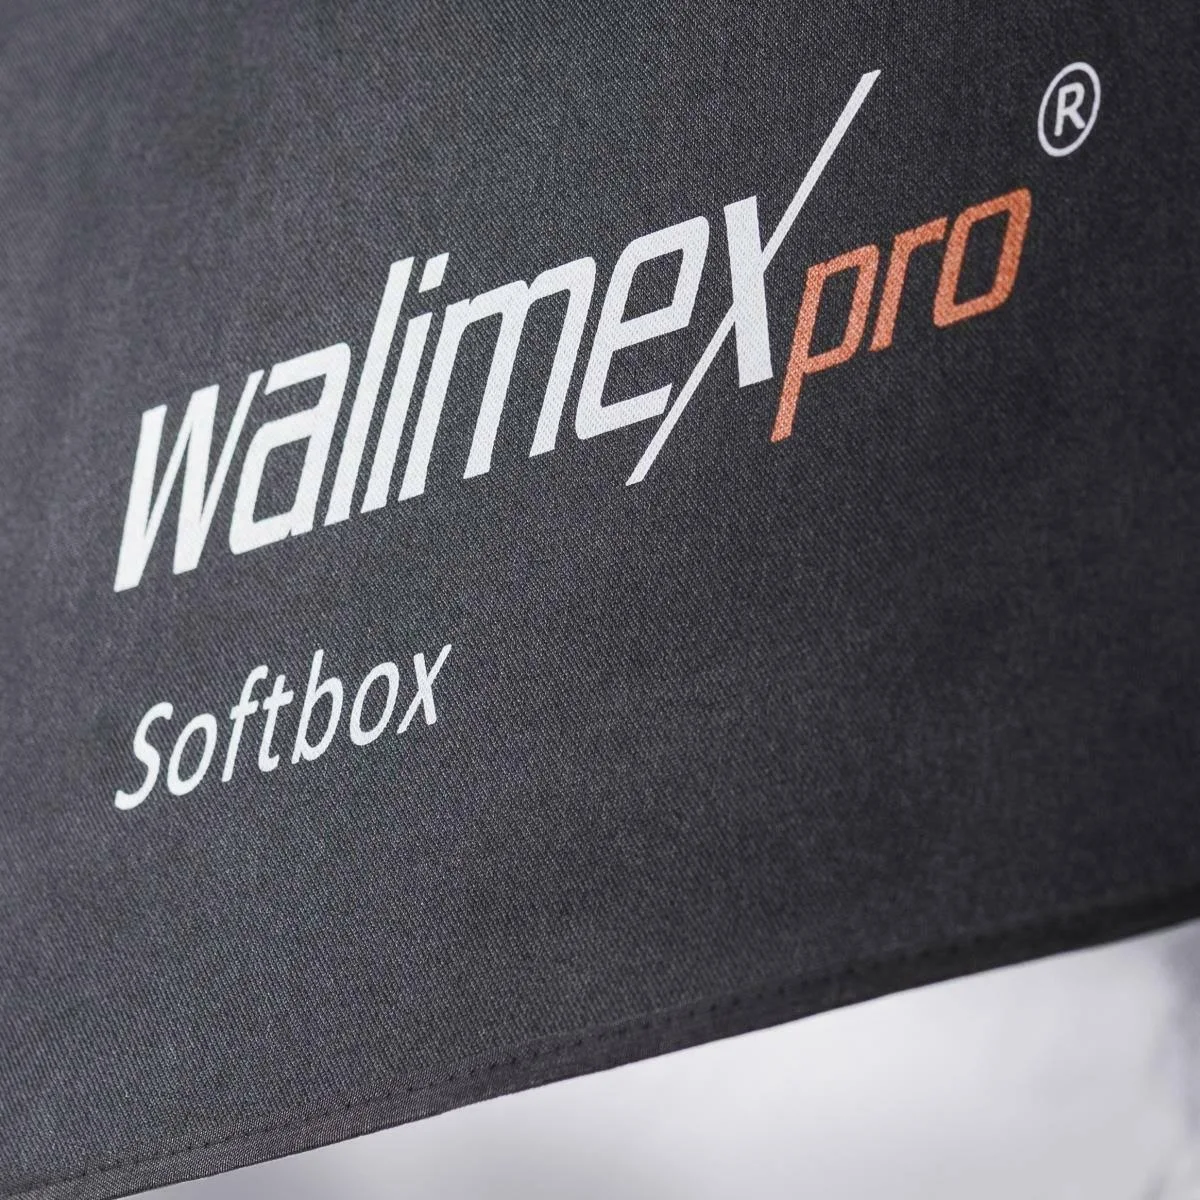 Softbox 16074 WALIMEX